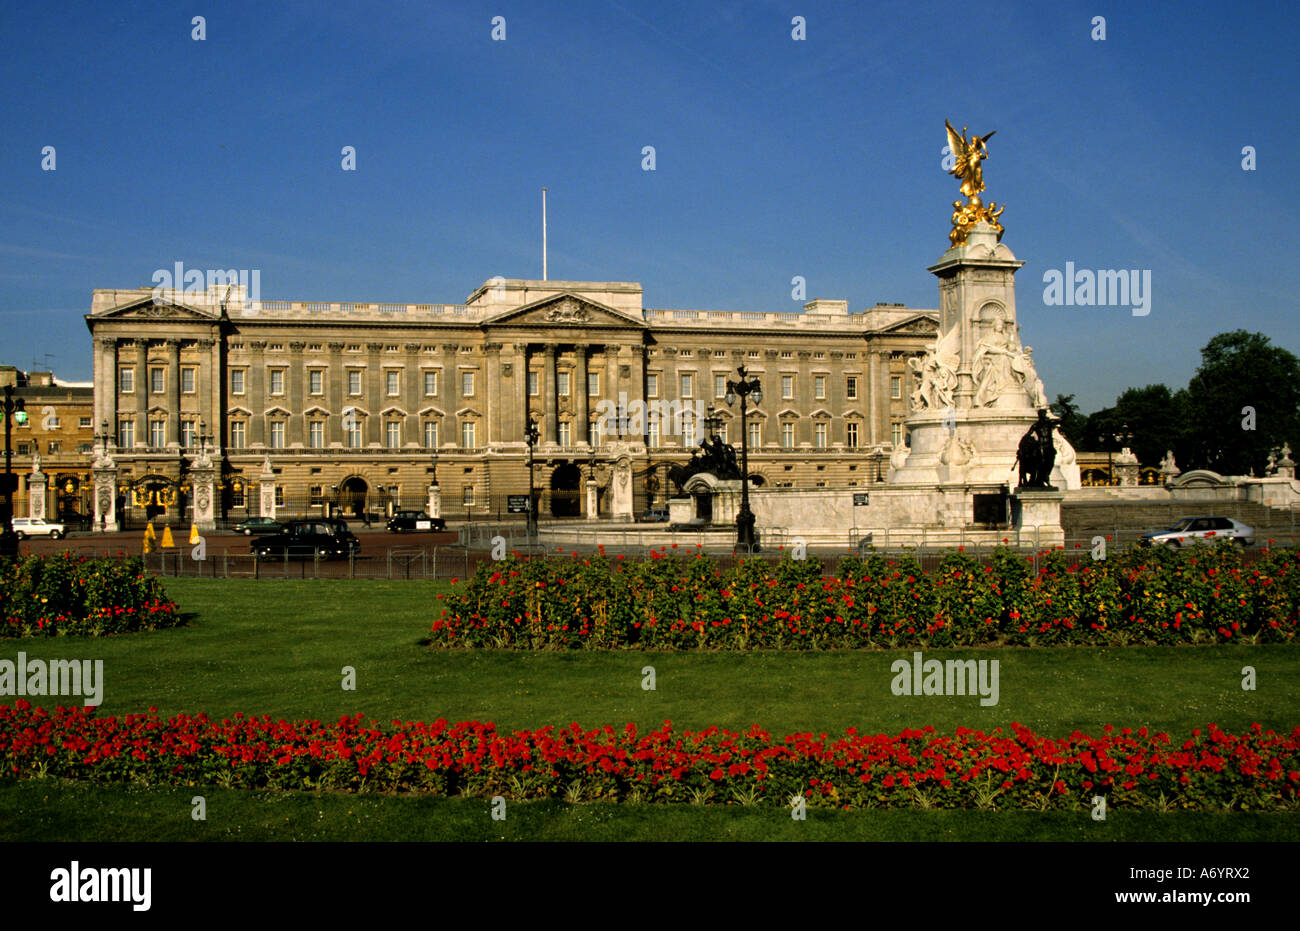 Royal Buckingham Palace London United Kingdom Stock Photo